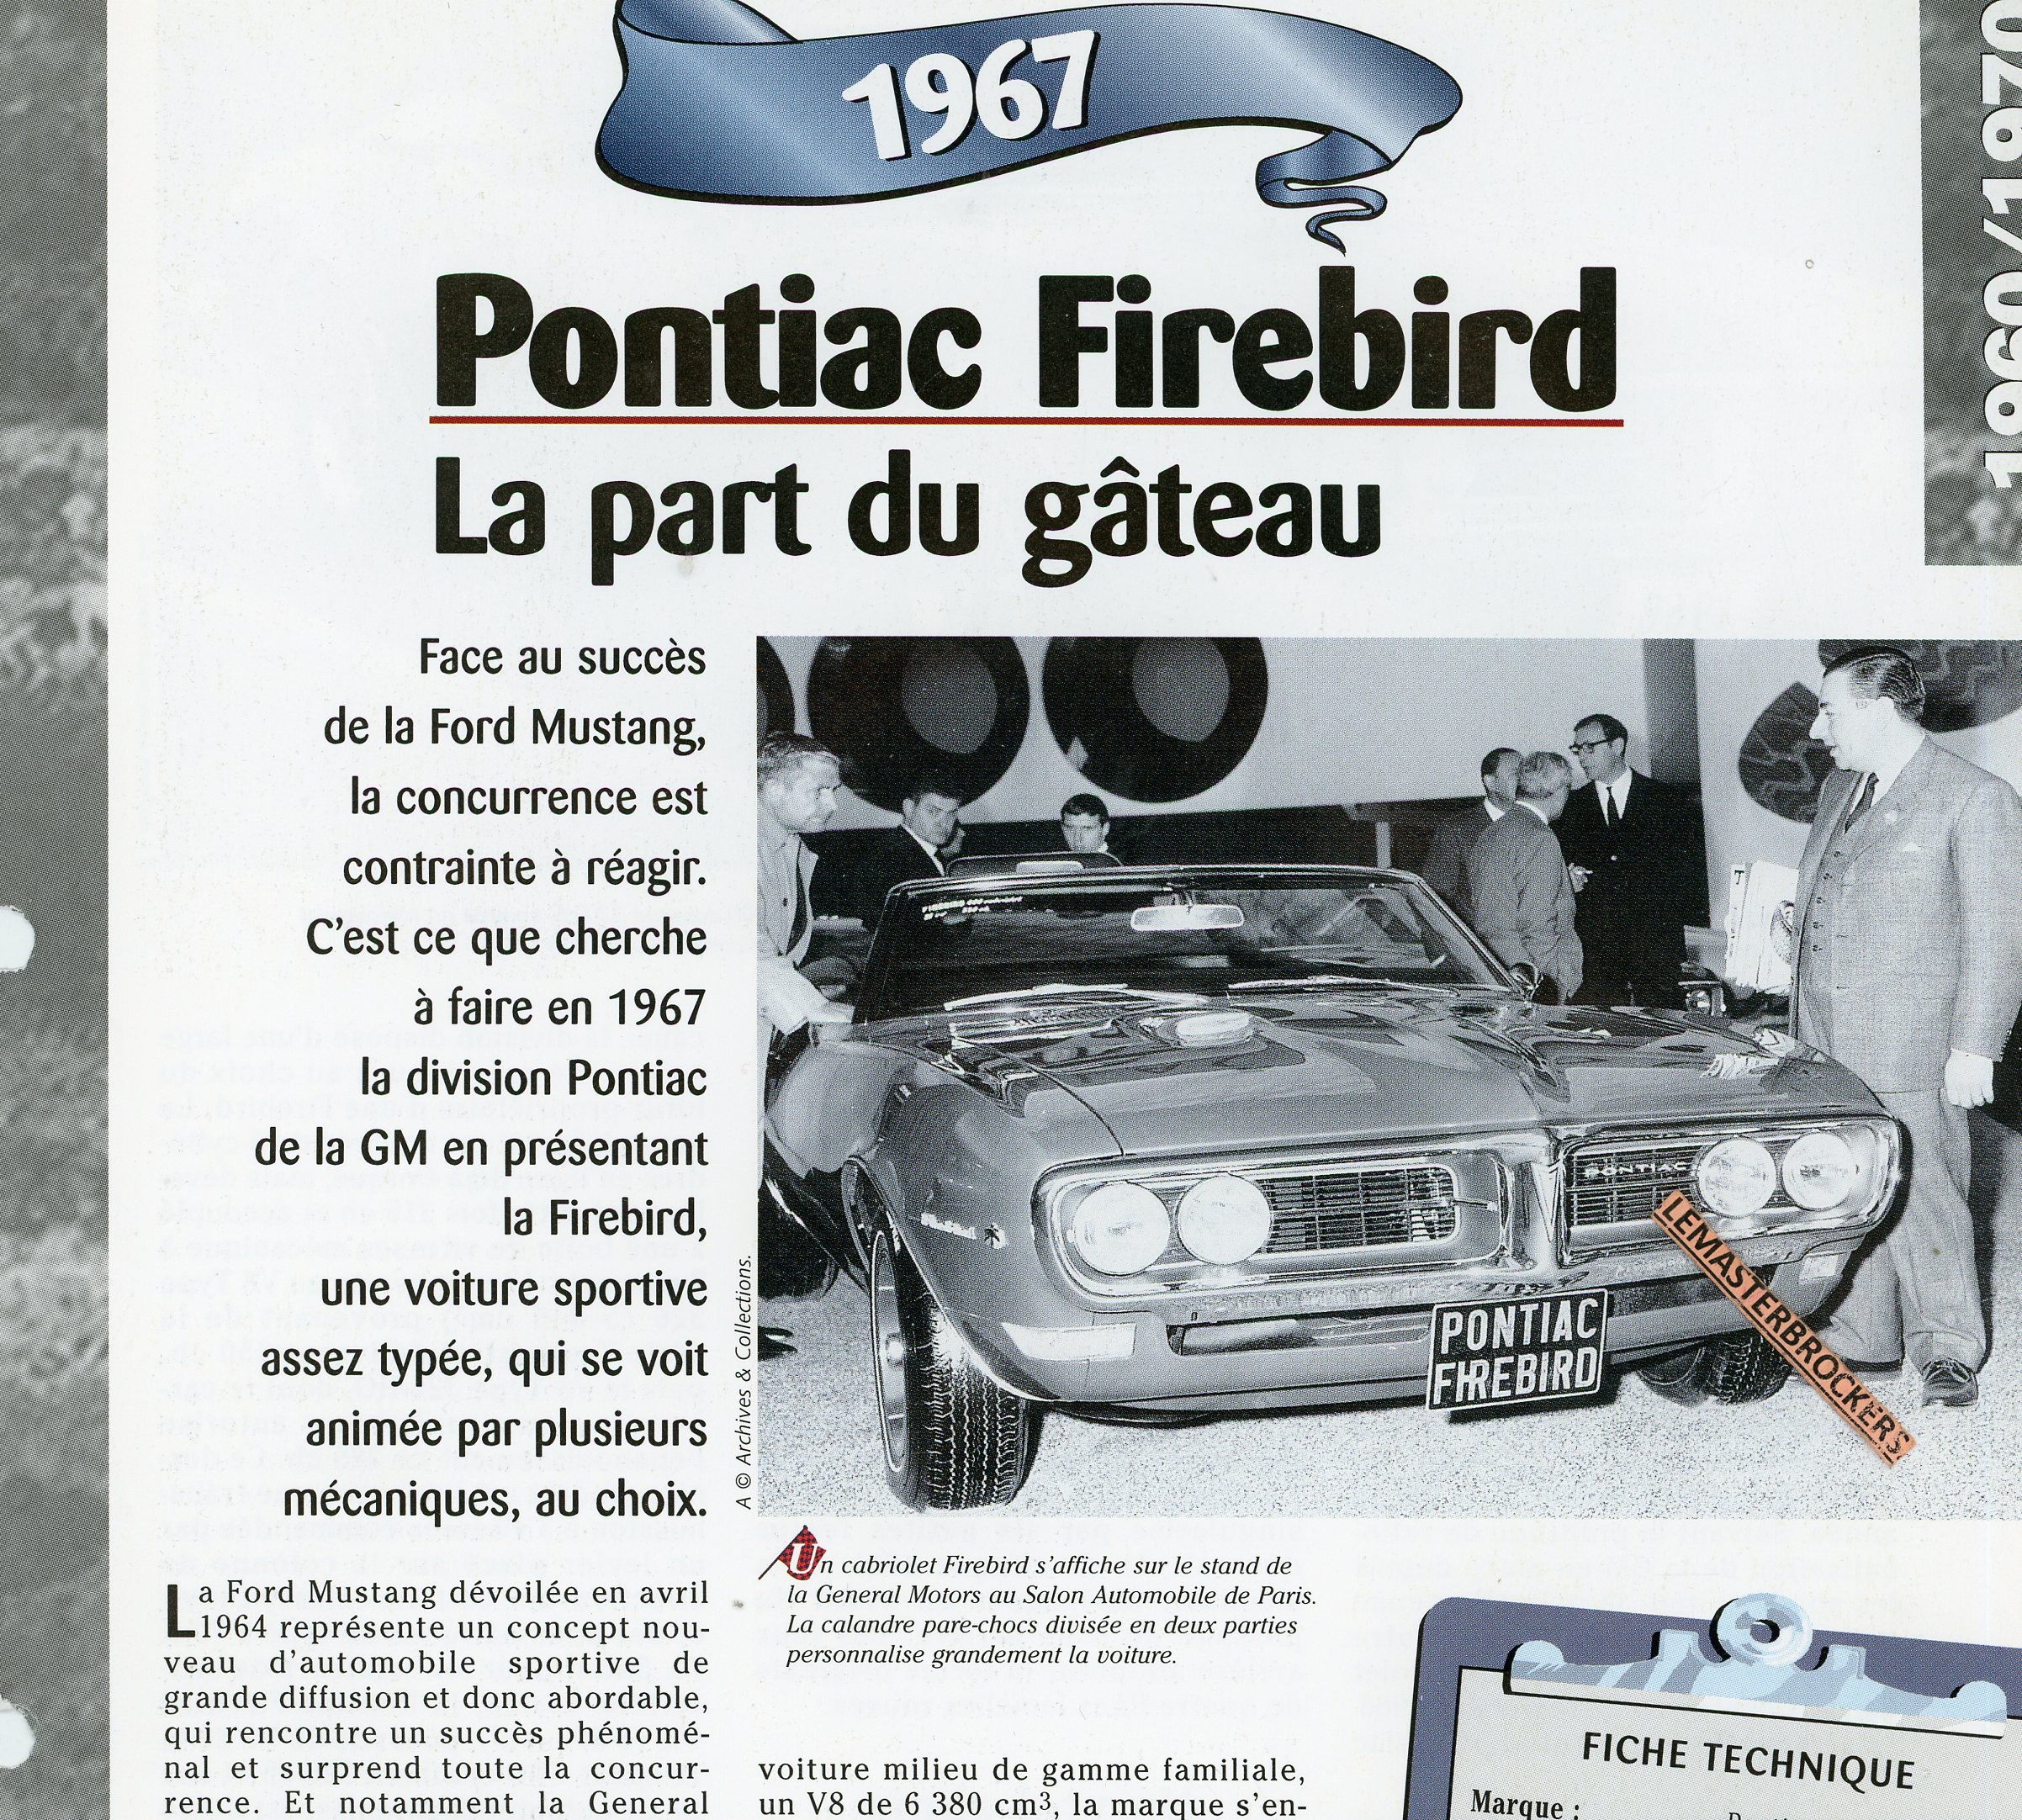 PONTIAC-FIREBIRD-1967-FICHE-TECHNIQUE-VOITURE-LEMASTERBROCKERS